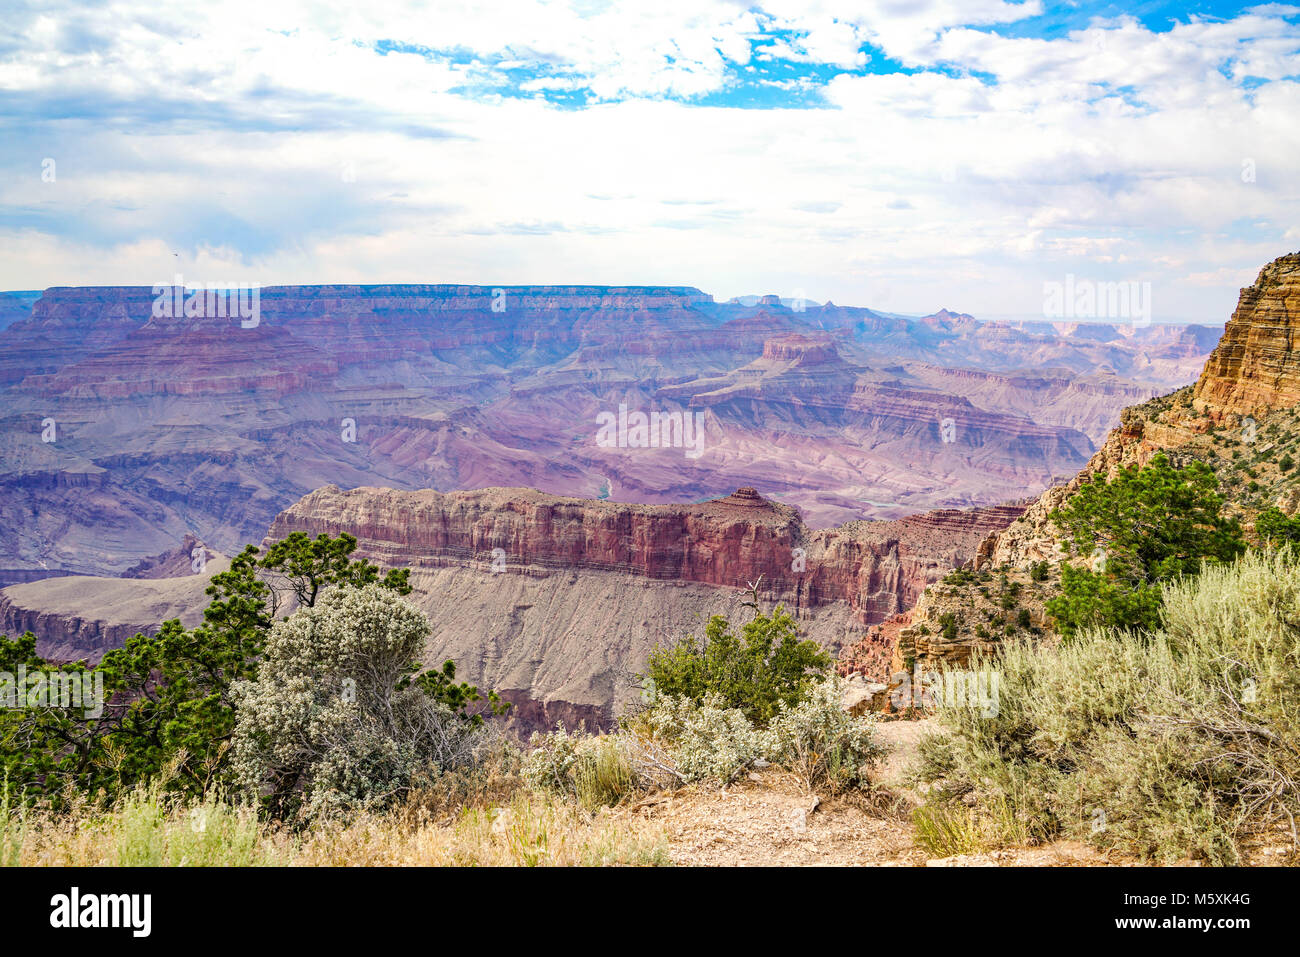 Vues de la rive sud du Grand Canyon dans l'Arizona du nord. Je pourrais avoir passé toute la journée à prendre des photos de ce magnifique phénomène naturel. Banque D'Images